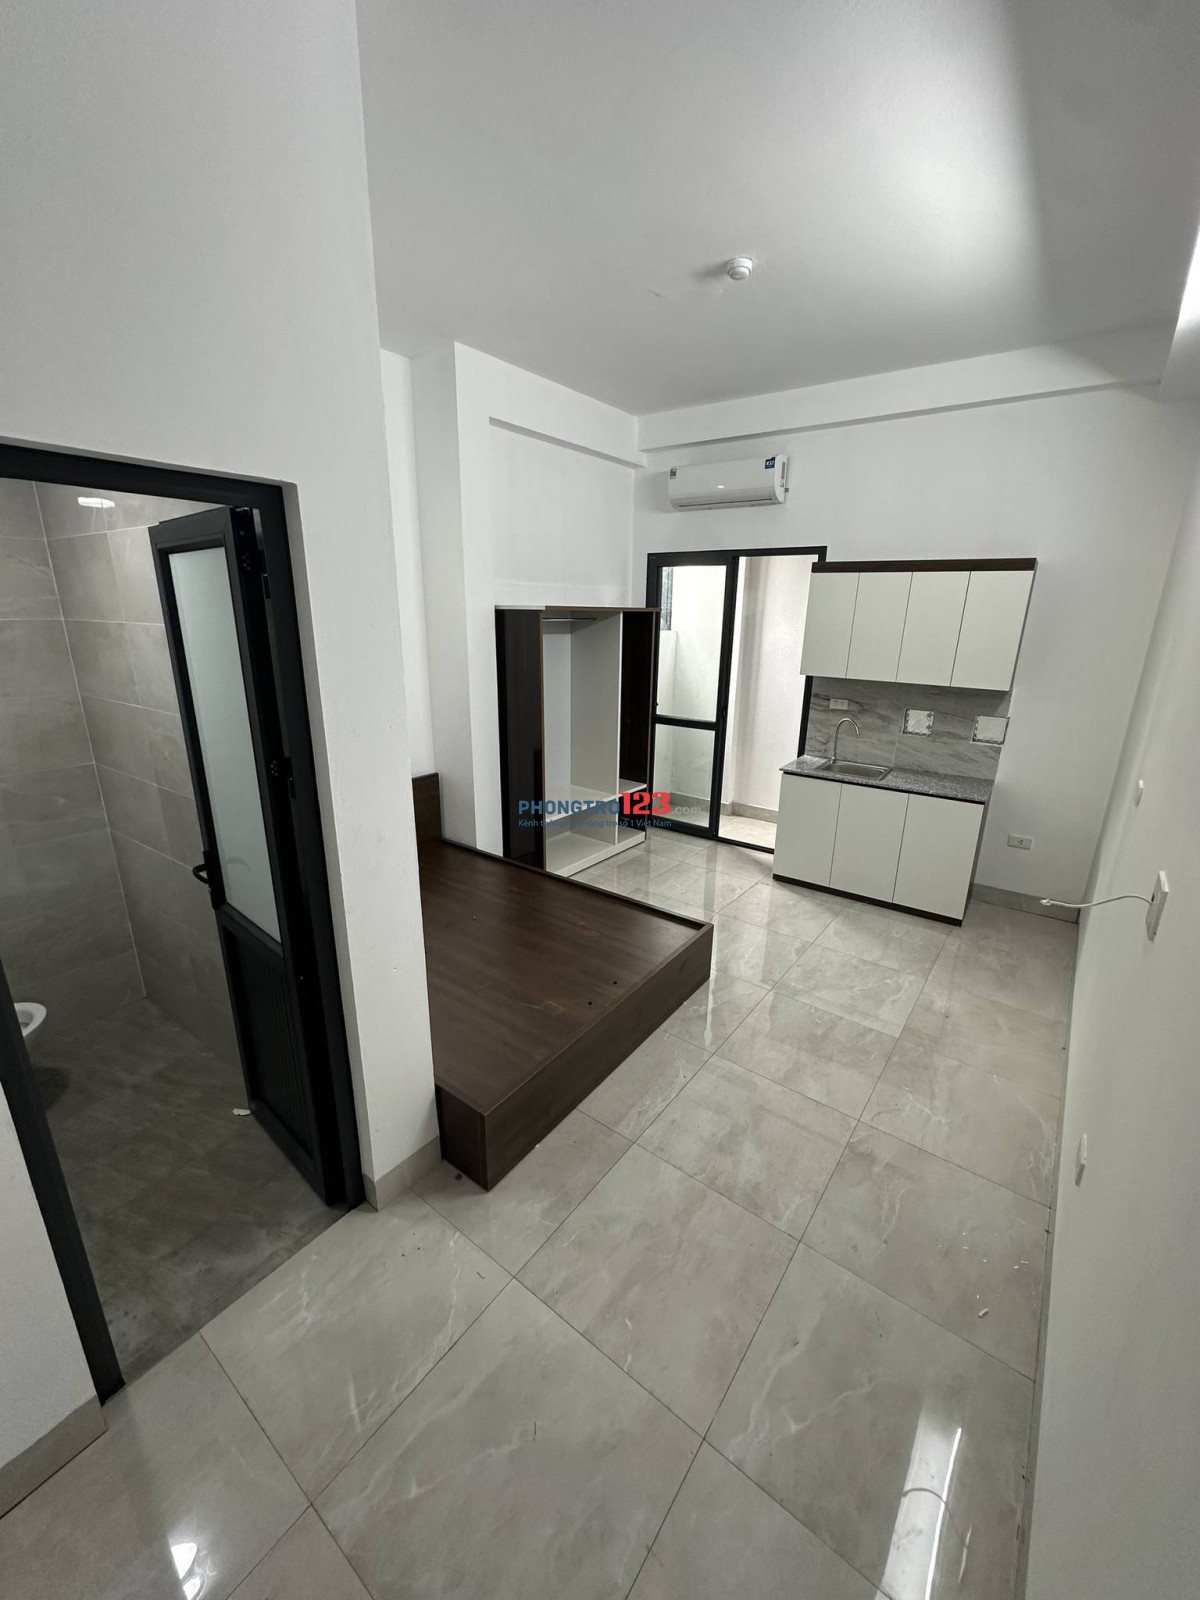 Cho thuê phòng trọ cao cấp tại Yên Xá, căn hộ mới xây, đủ tiện nghi, giá 3,2 triệu/tháng